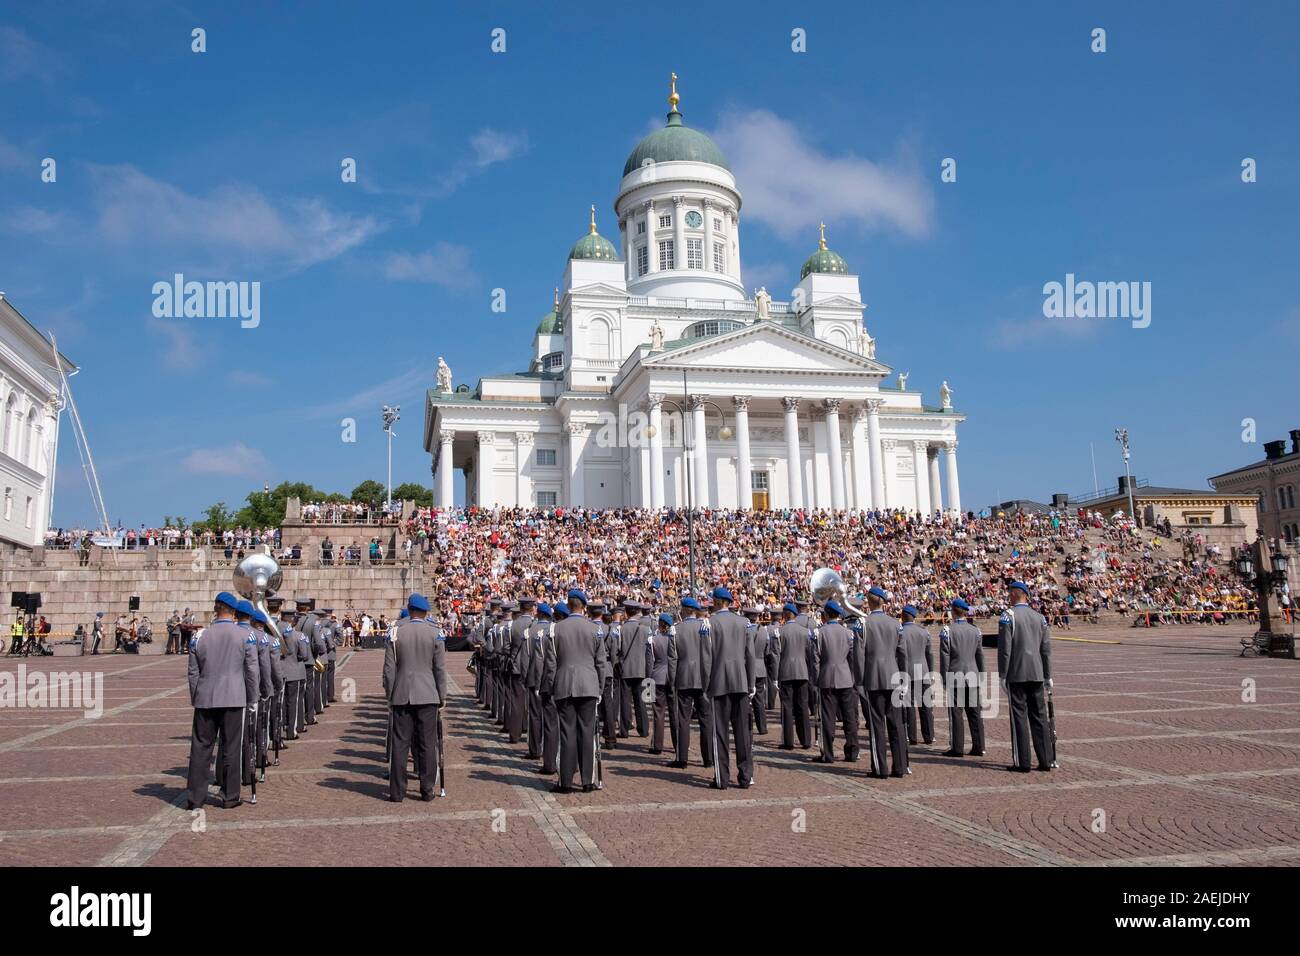 Vistas a la Plaza del Senado hacia la banda militar y la gente sentada en los escalones de la Catedral de Helsinki, Helsinki, Finlandia, Escandinavia, Europa Foto de stock